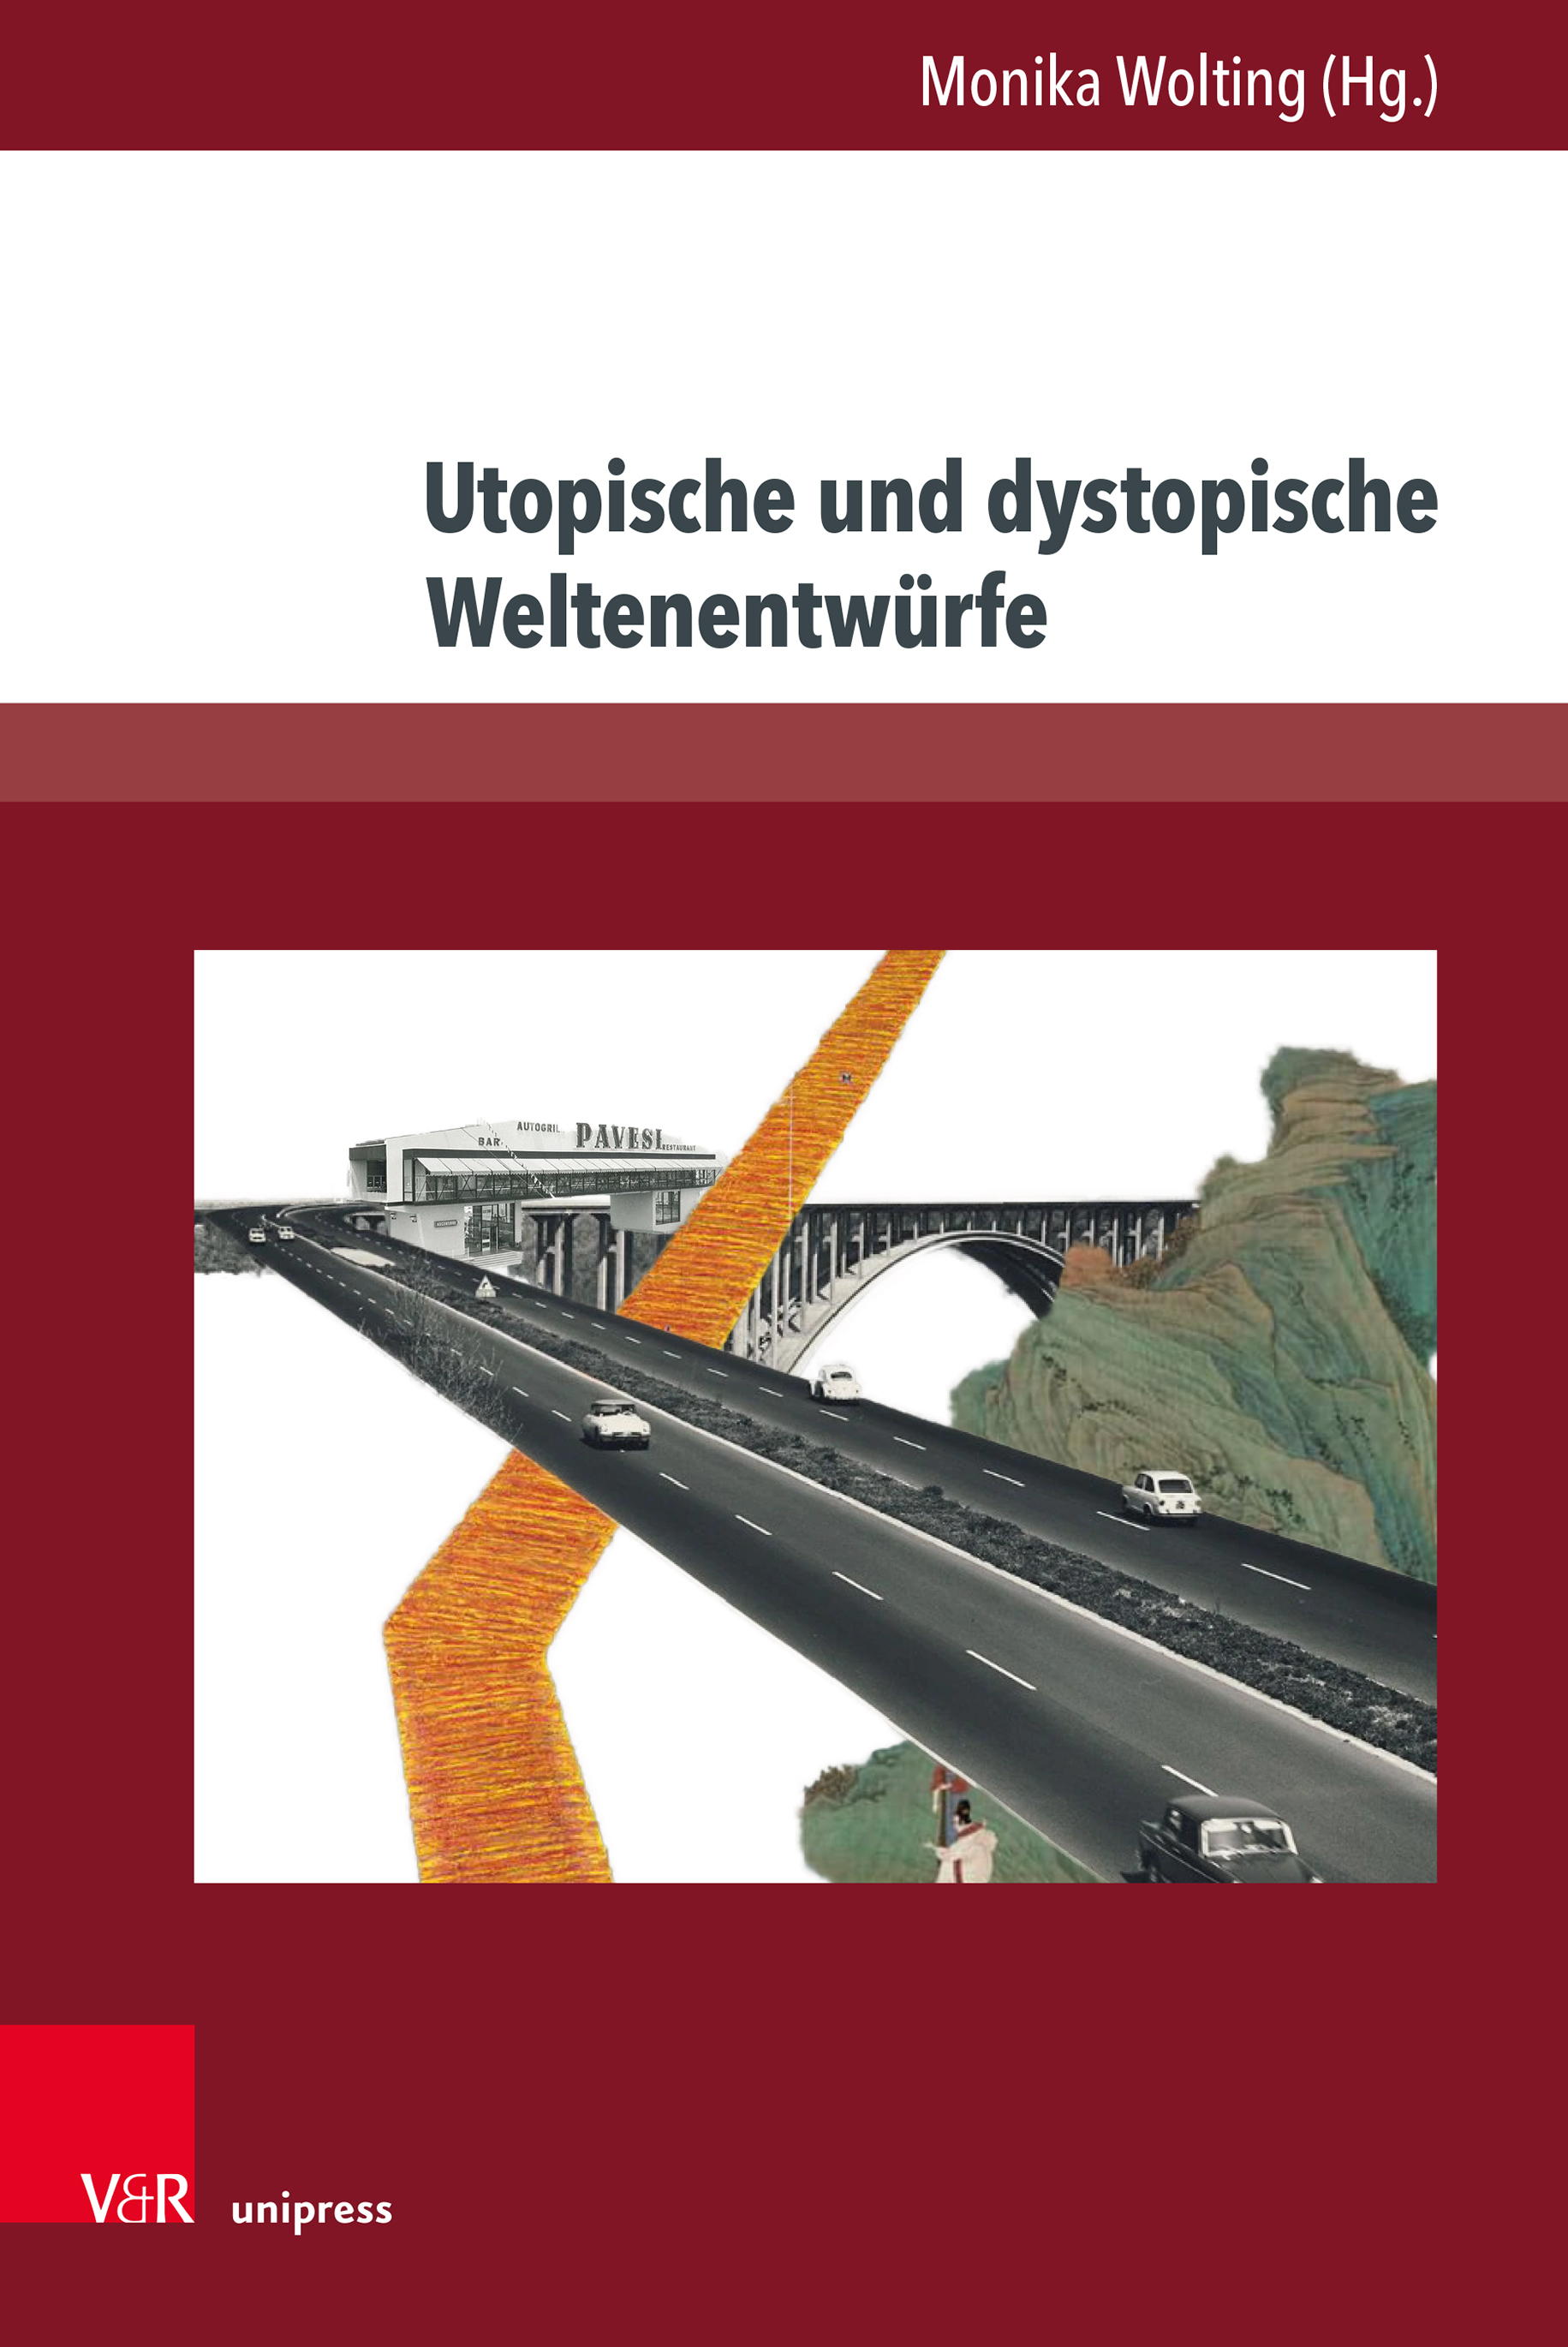 Monika Wolting (Hg.): Utopische und dystopische Weltenentwürfe. Göttingen 2022